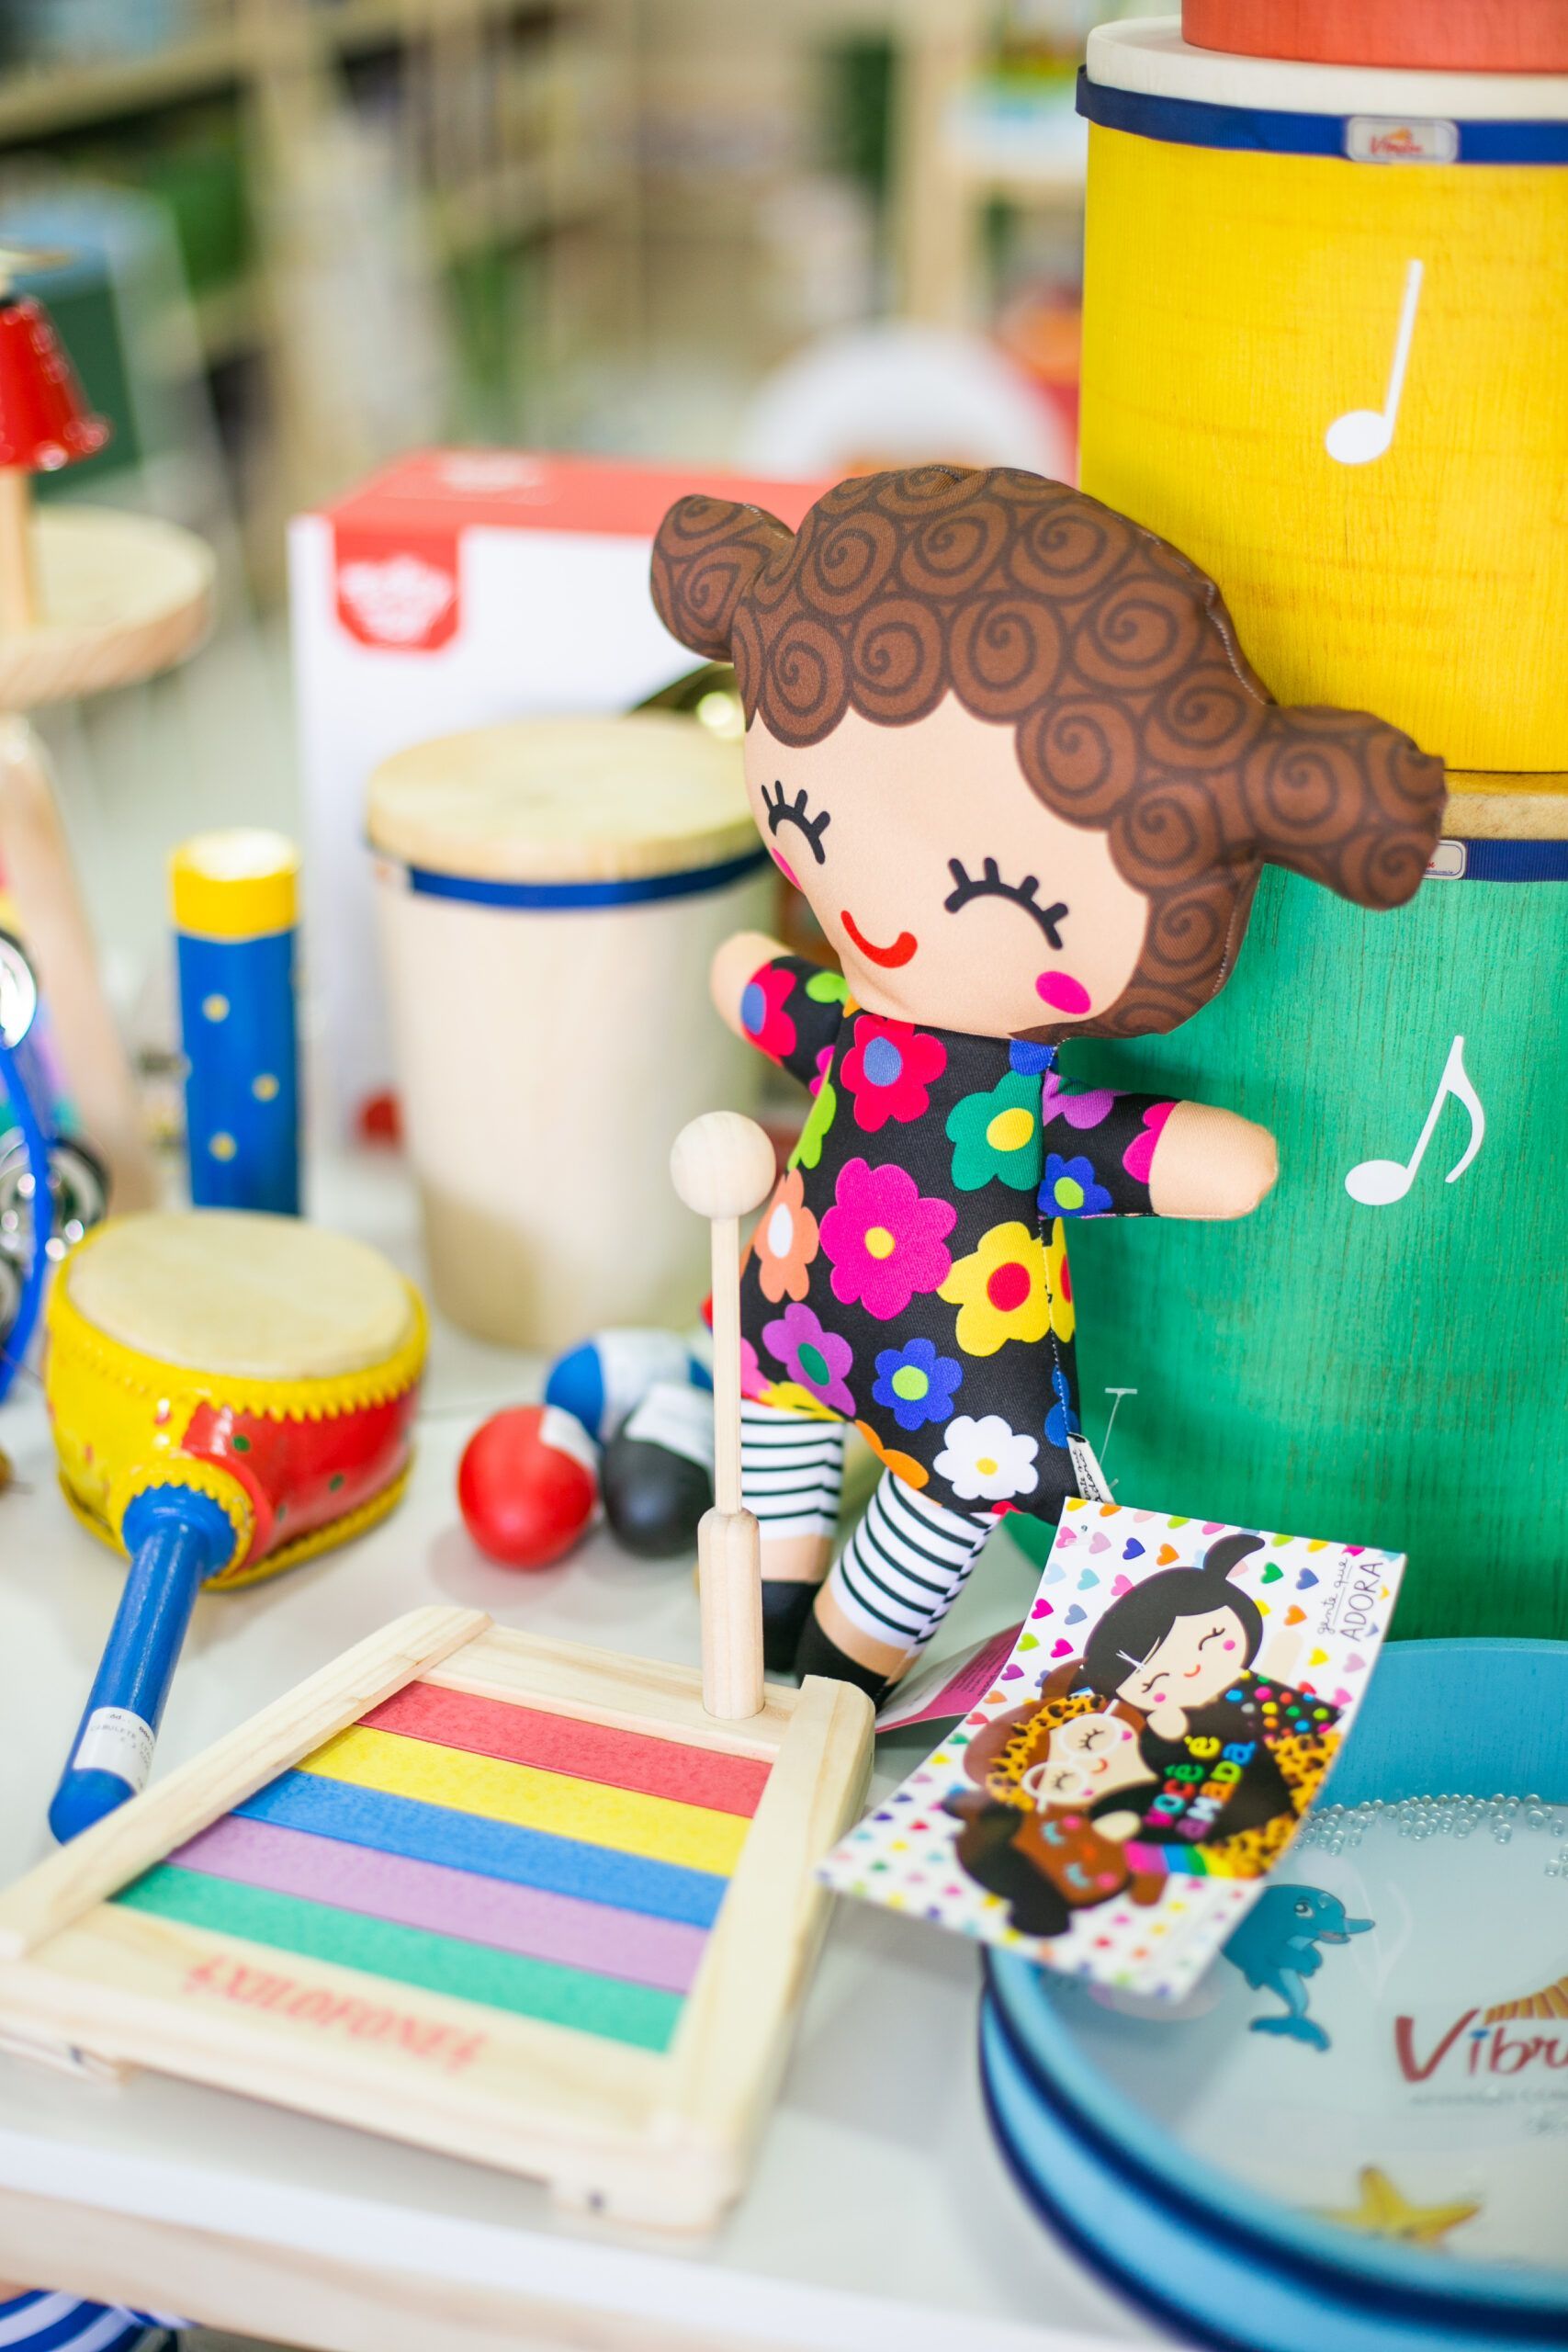 Uma boneca está sentada em cima de uma pilha de instrumentos musicais